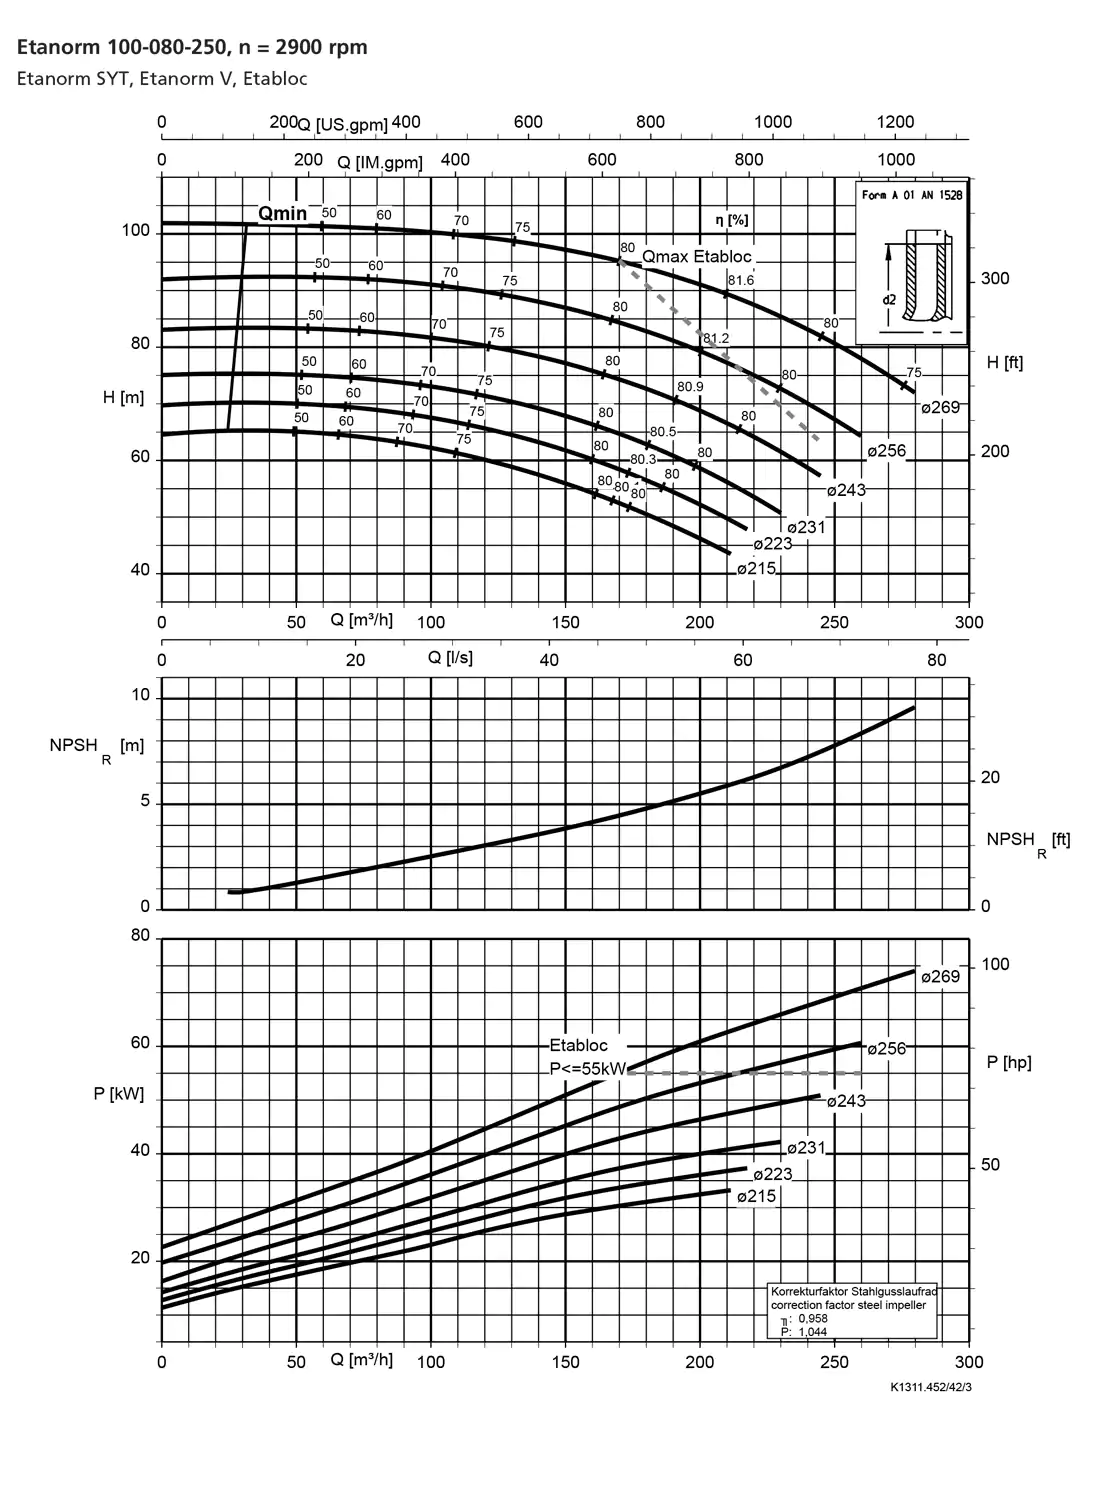 نمودار-کارکرد-پمپ-etanorm-syt-100-80-250-2900